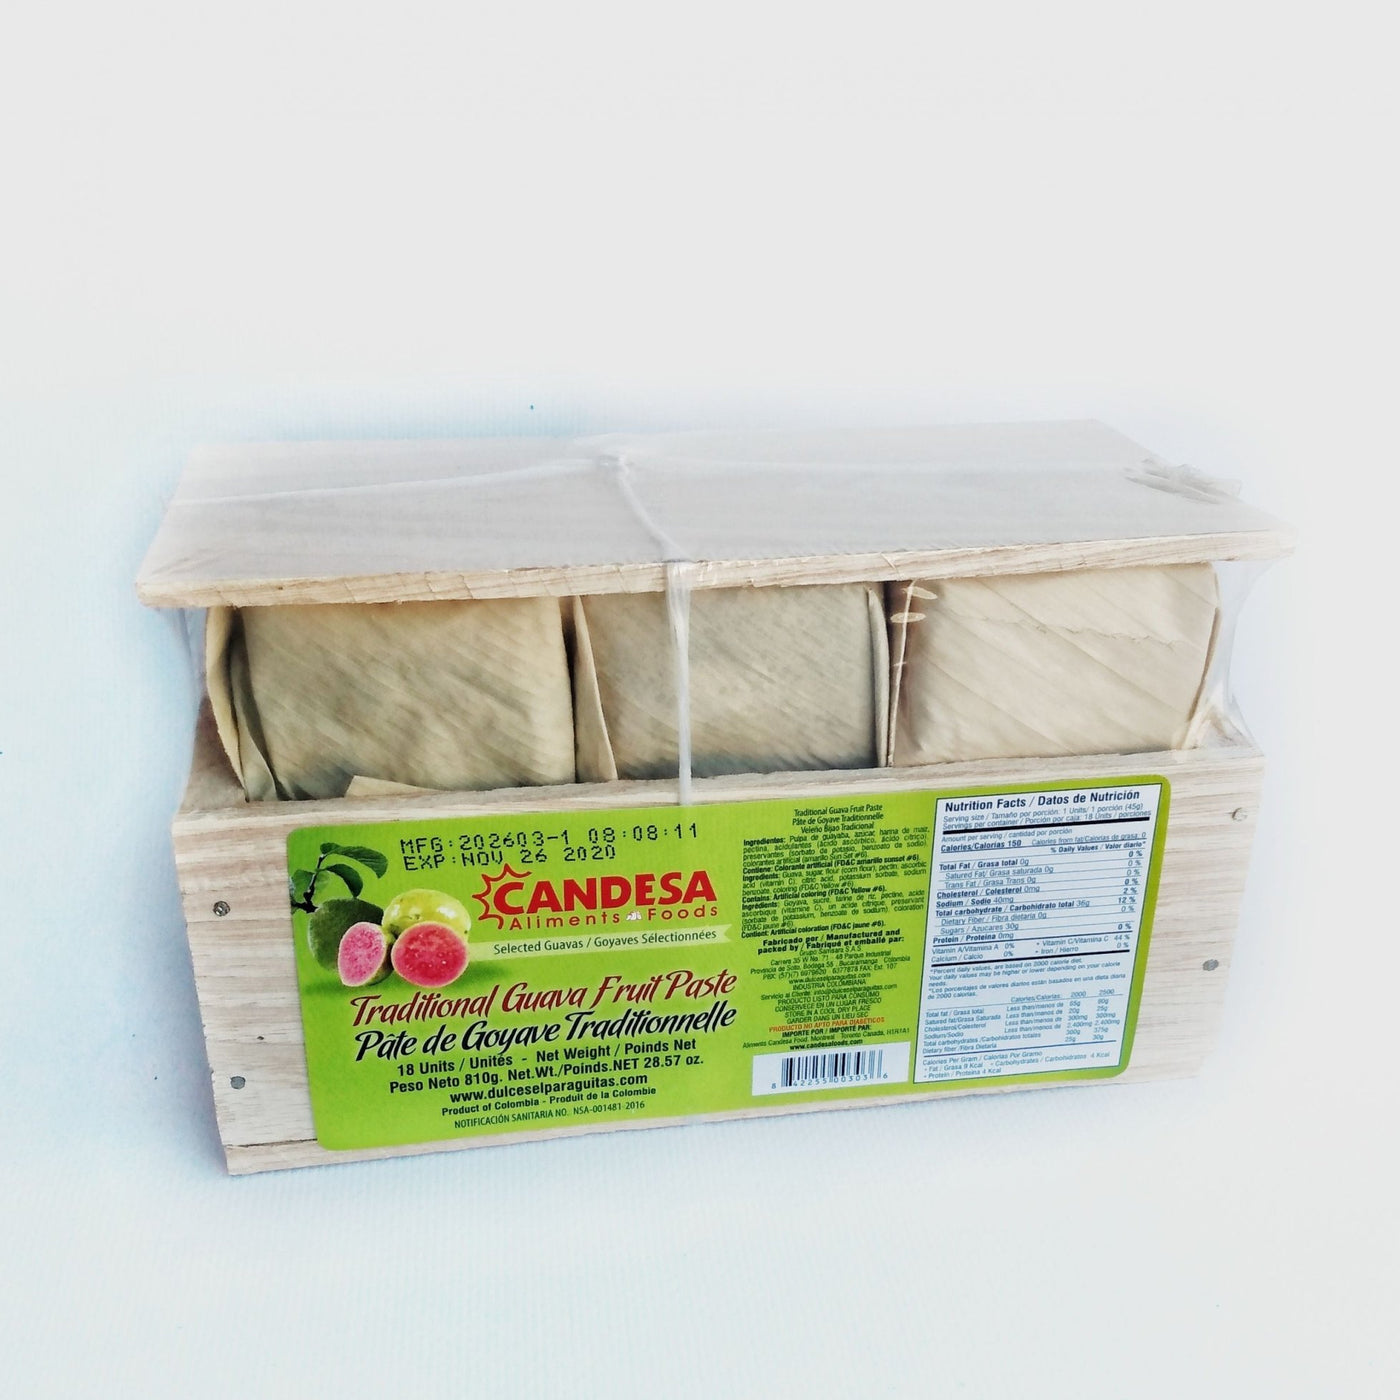 Bocadillo Veleño (Guava Paste) Box 18 units Candesa